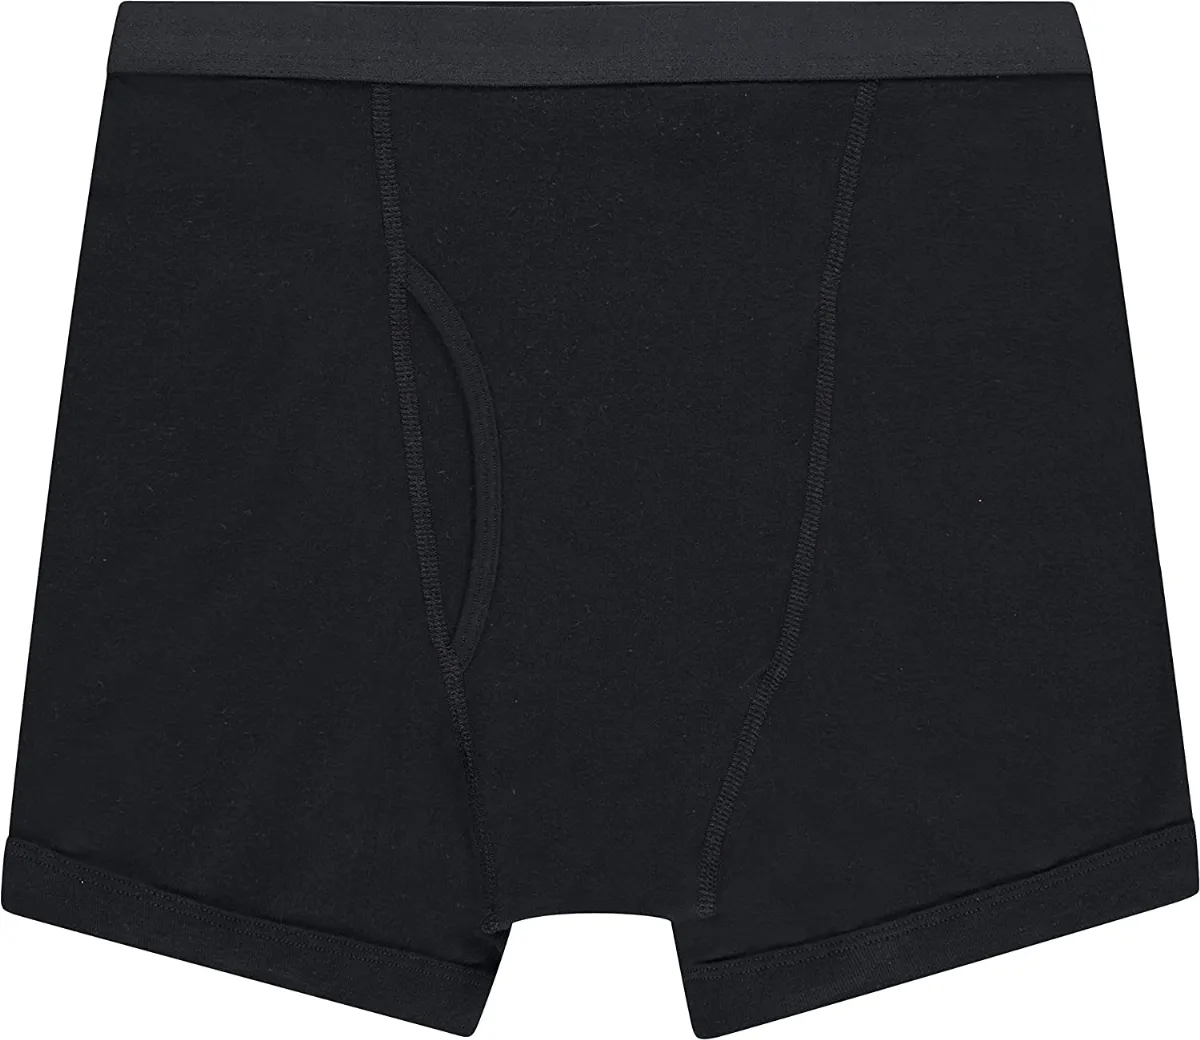 Men's Gildan Boxer Briefs 100% Cotton - Black Size Large